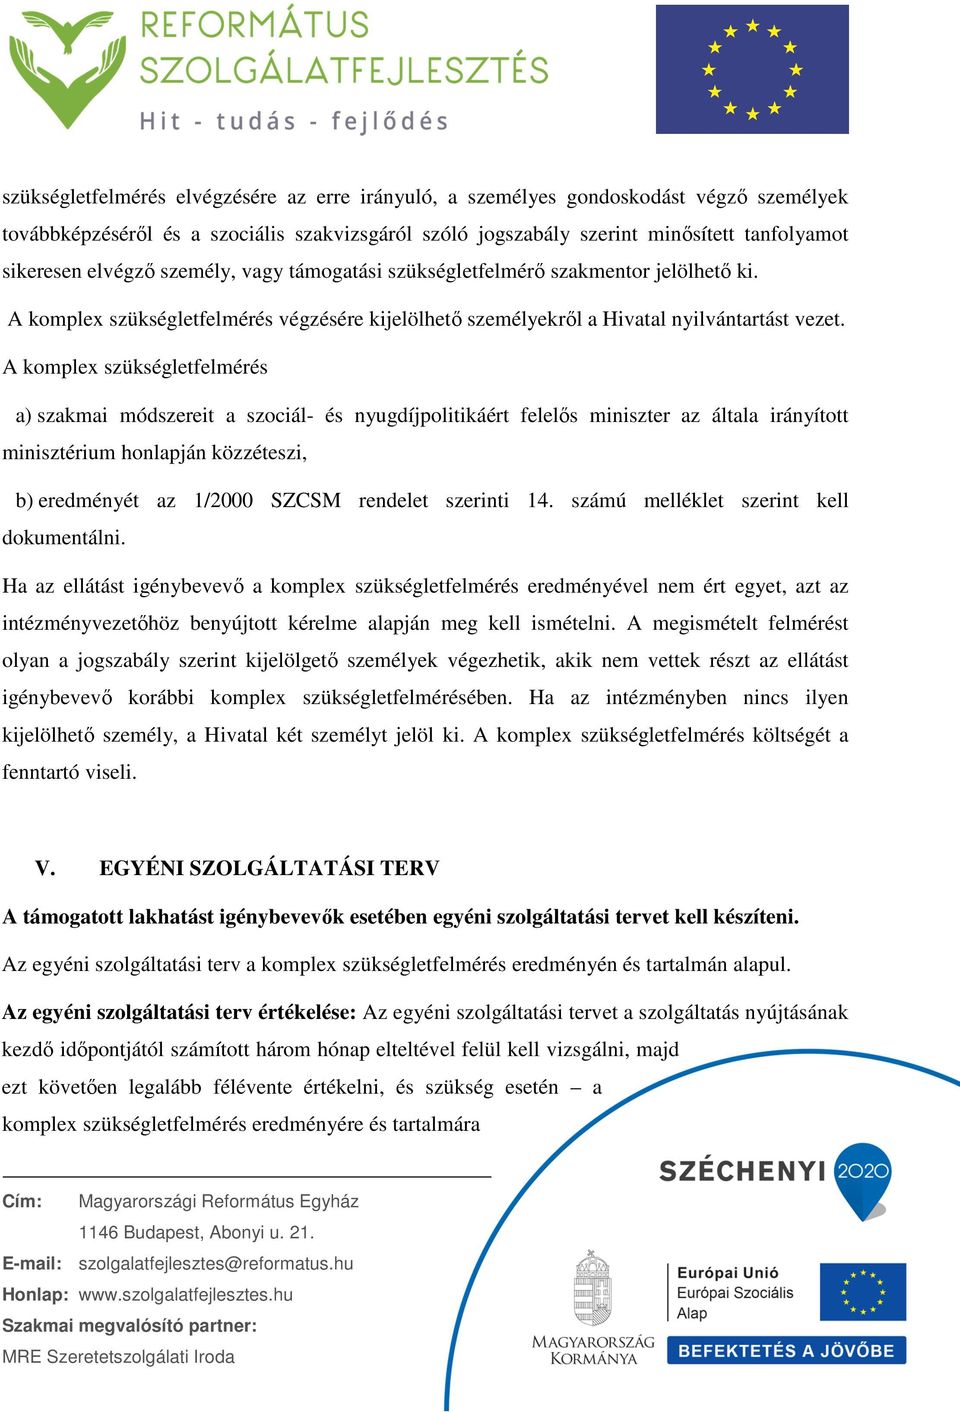 A komplex szükségletfelmérés a) szakmai módszereit a szociál- és nyugdíjpolitikáért felelős miniszter az általa irányított minisztérium honlapján közzéteszi, b) eredményét az 1/2000 SZCSM rendelet